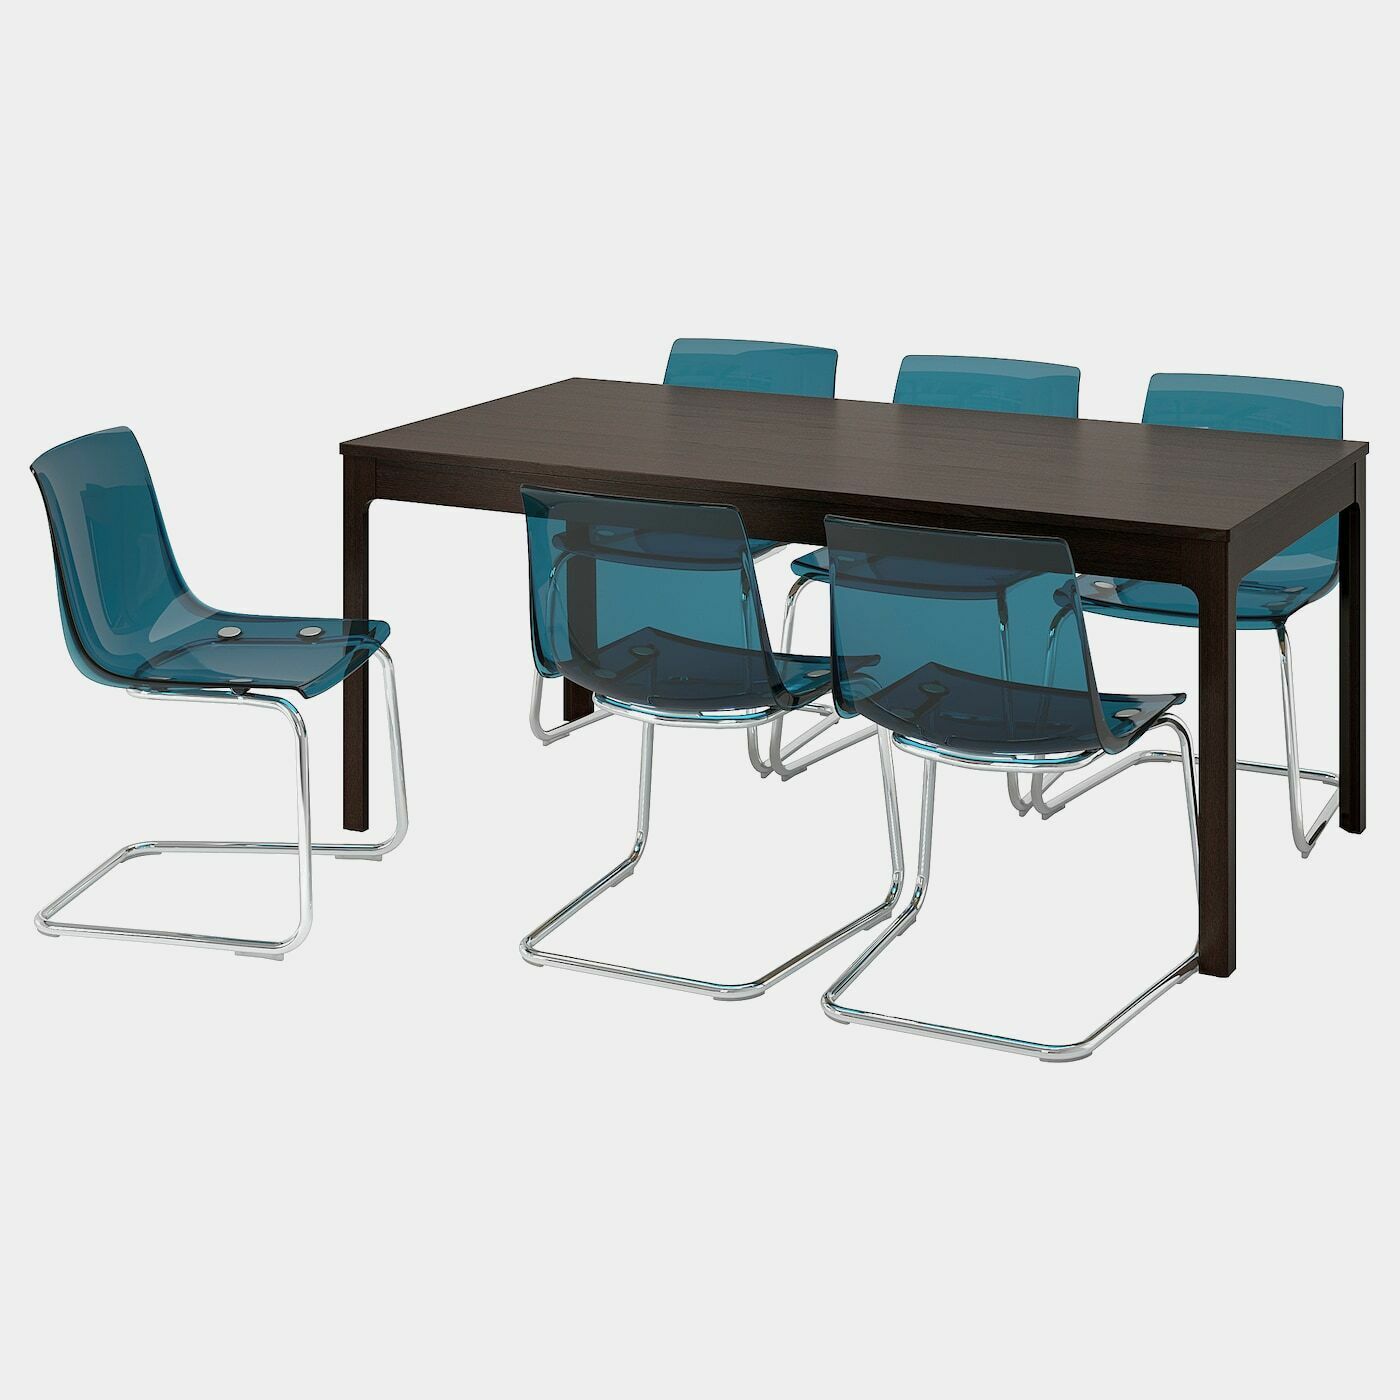 EKEDALEN / TOBIAS Tisch und 6 Stühle  - Essplatzgruppe - Möbel Ideen für dein Zuhause von Home Trends. Möbel Trends von Social Media Influencer für dein Skandi Zuhause.